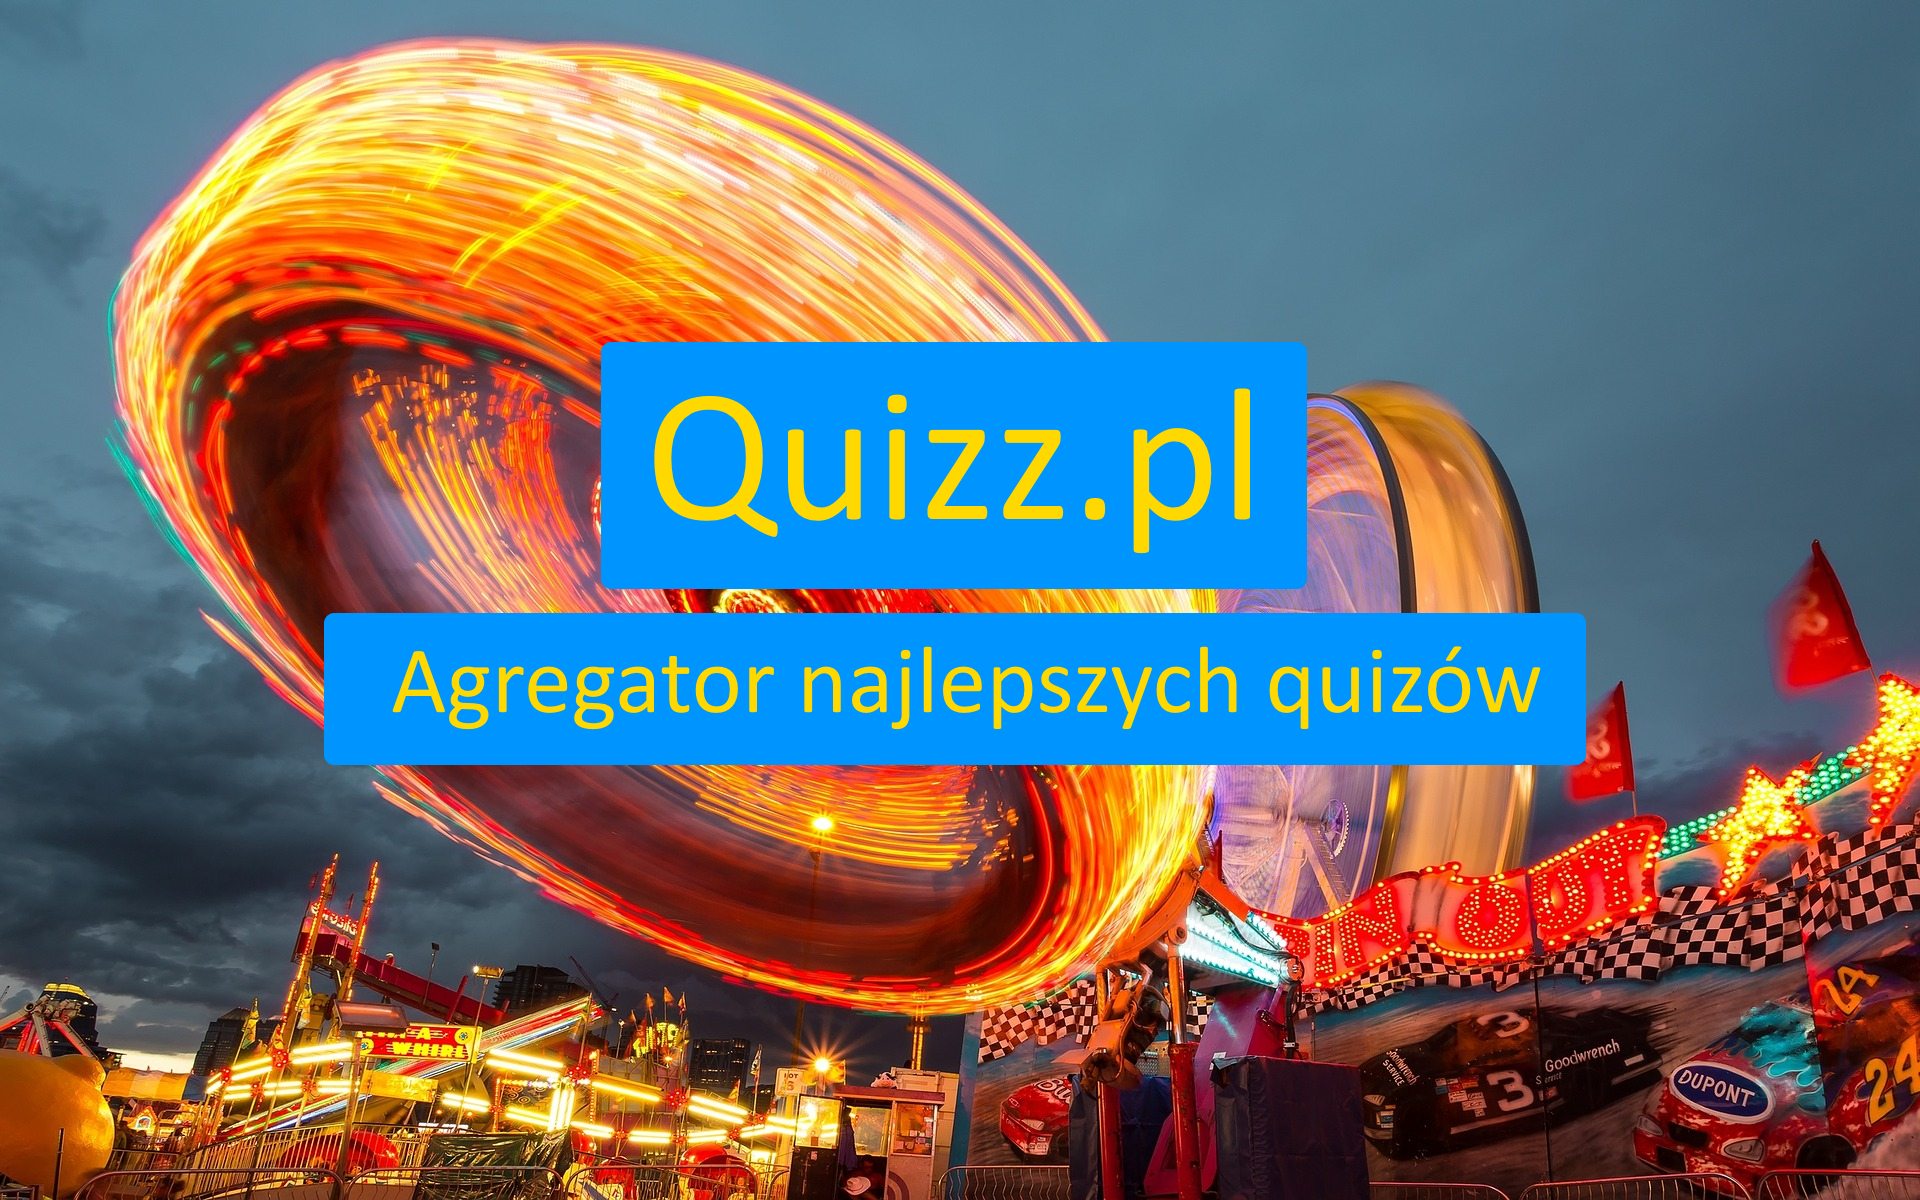 Najlepsze i bezpłatne quizy, testy wiedzy i sprawdziany - strona 2 - www.quizz.pl